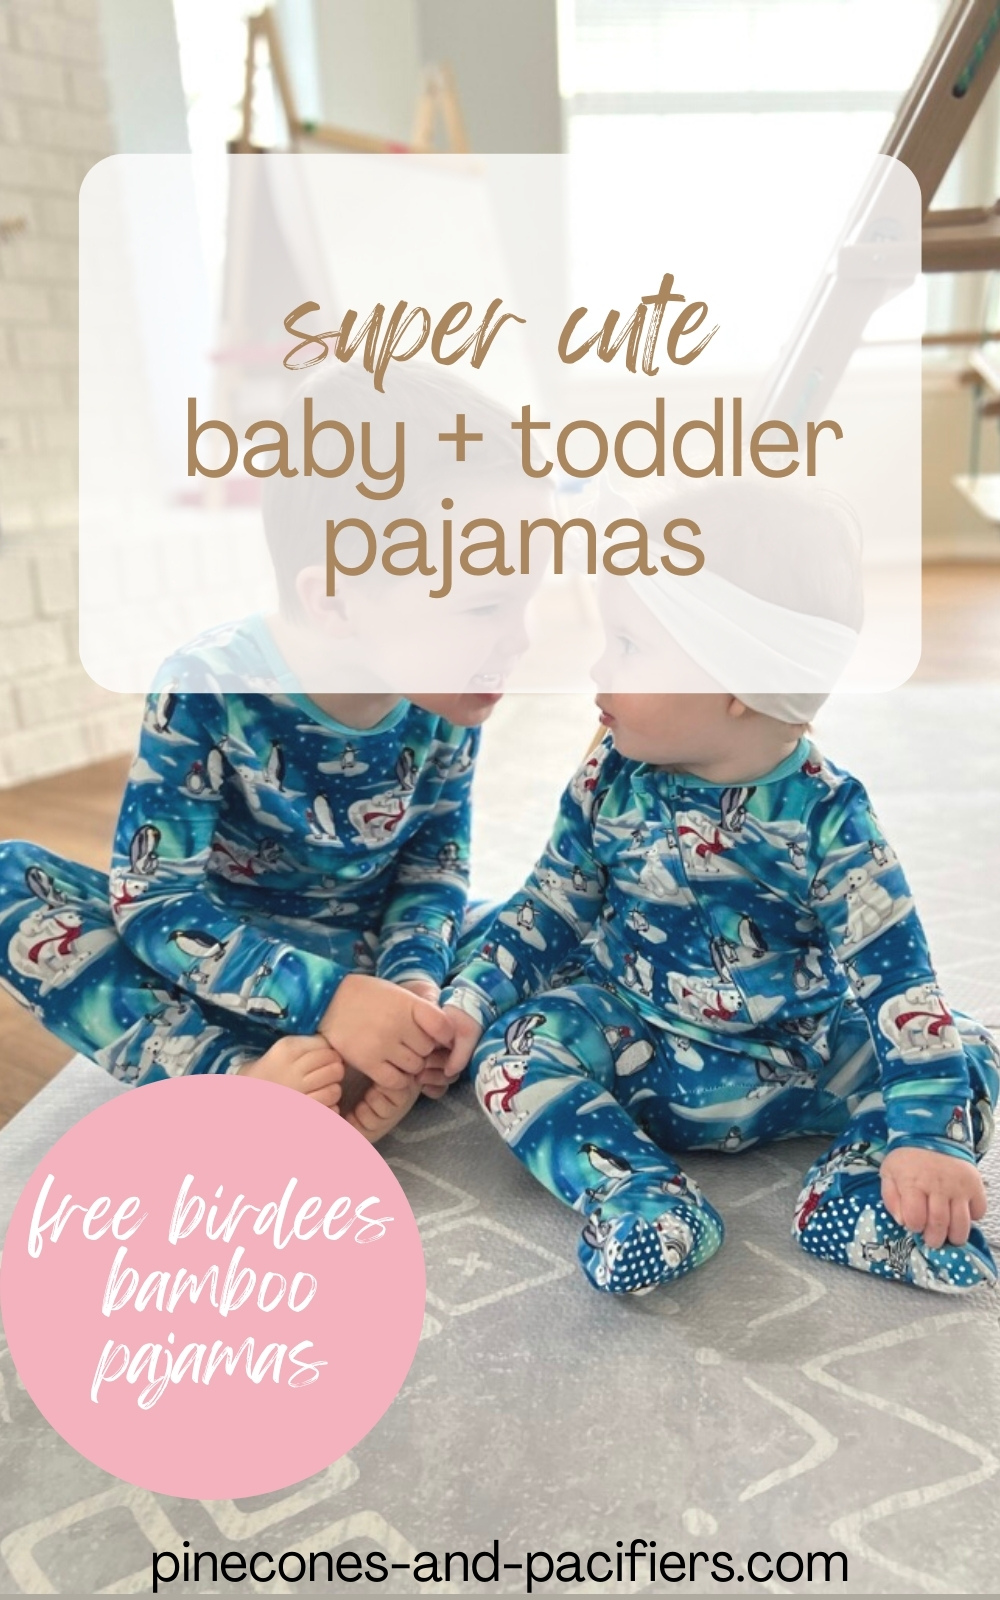 Free Birdees Bamboo Pajamas Review - Pinecones & Pacifiers